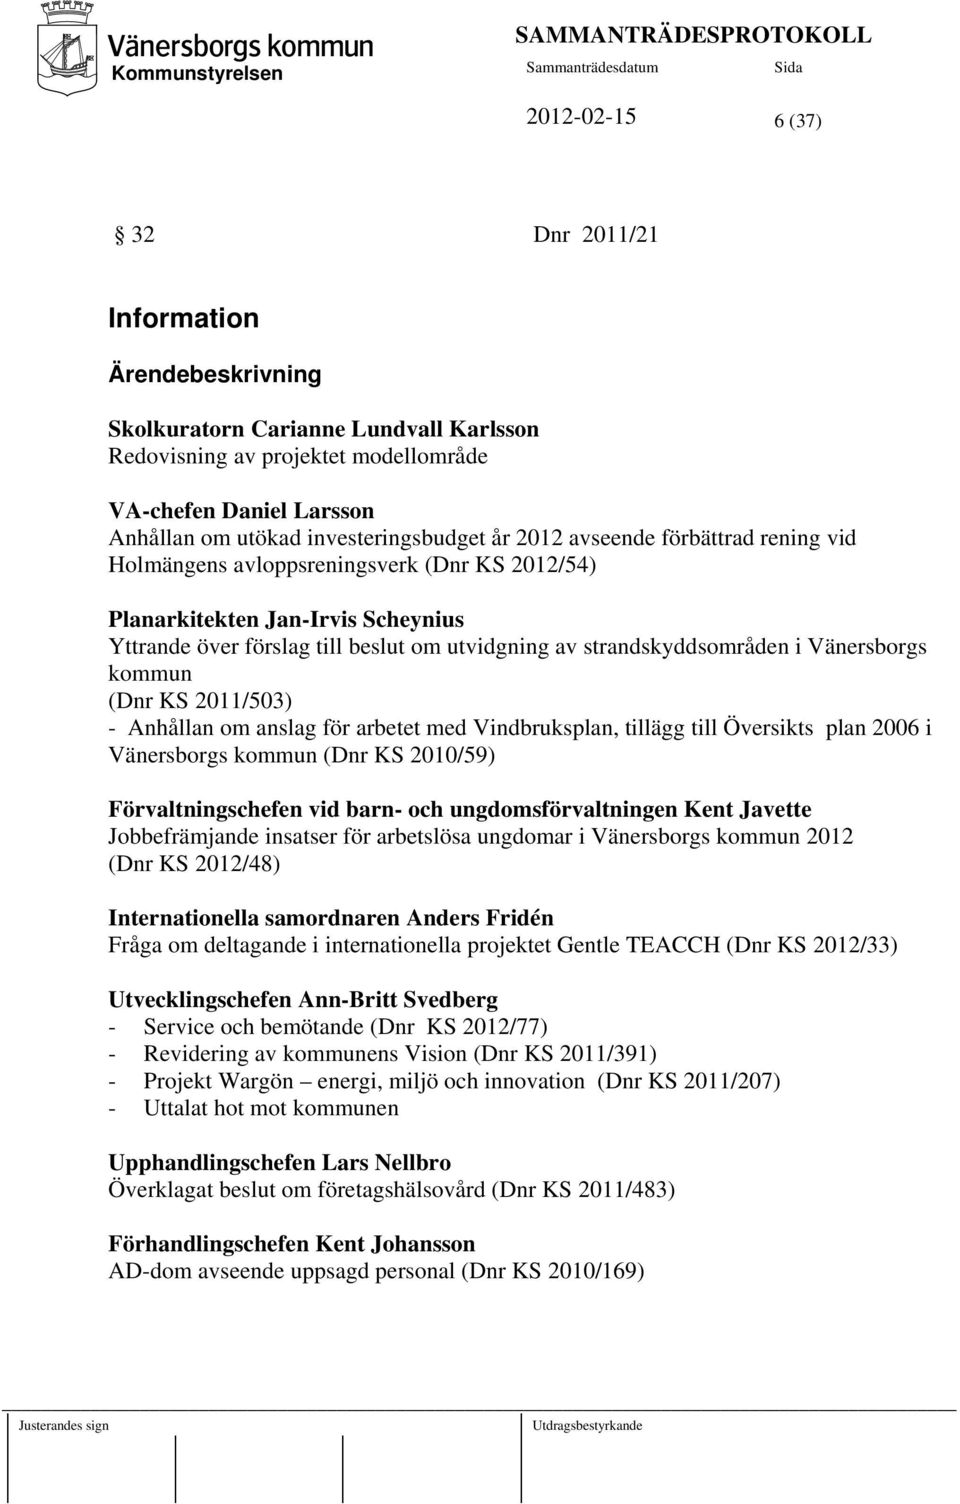 strandskyddsområden i Vänersborgs kommun (Dnr KS 2011/503) - Anhållan om anslag för arbetet med Vindbruksplan, tillägg till Översikts plan 2006 i Vänersborgs kommun (Dnr KS 2010/59)